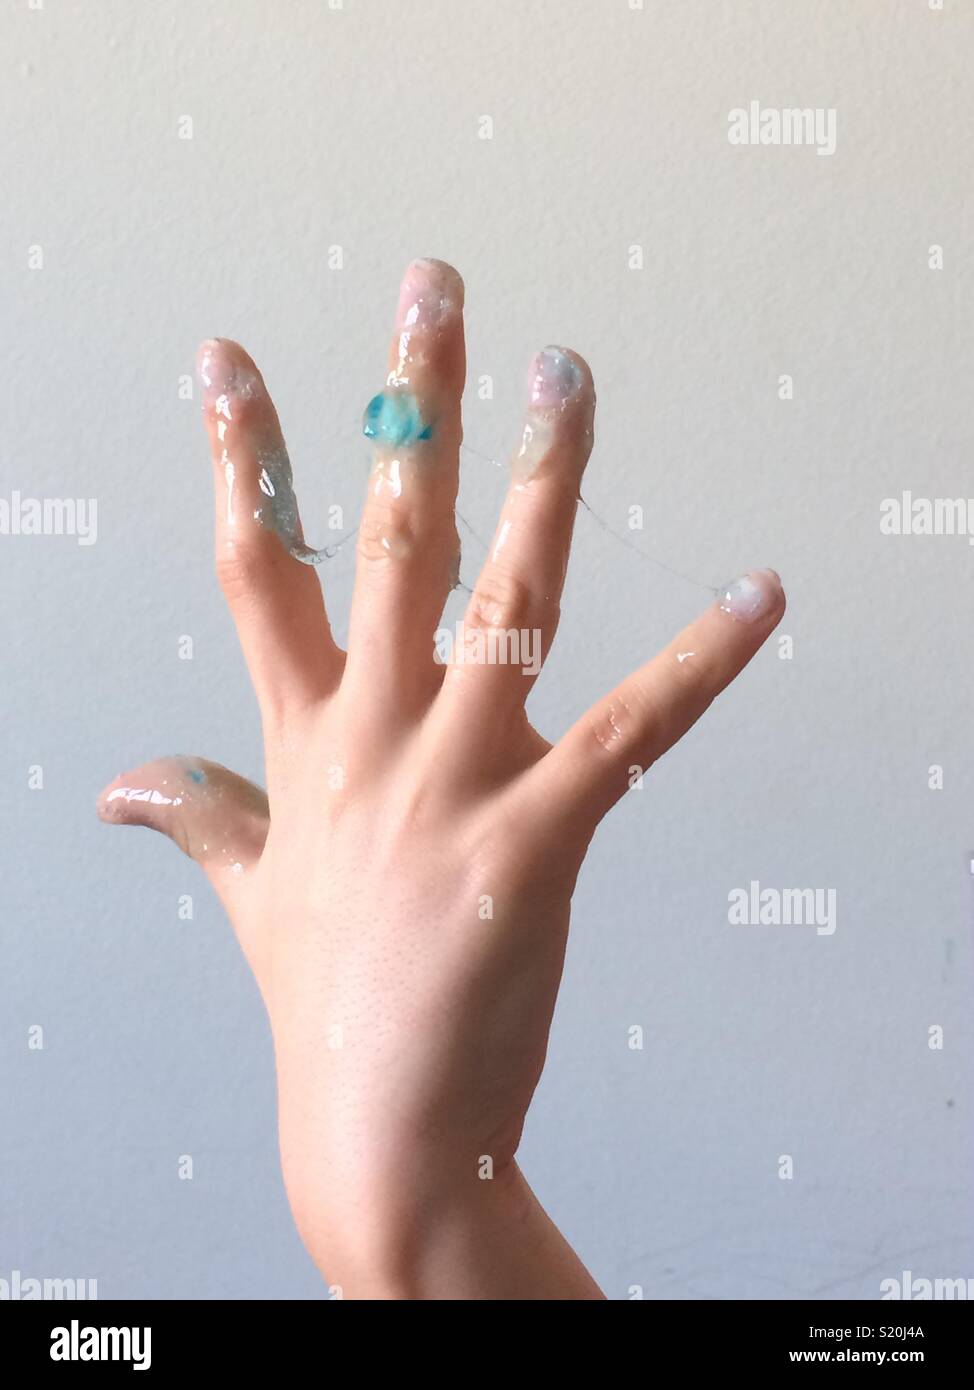 Slimy hand. Stock Photo